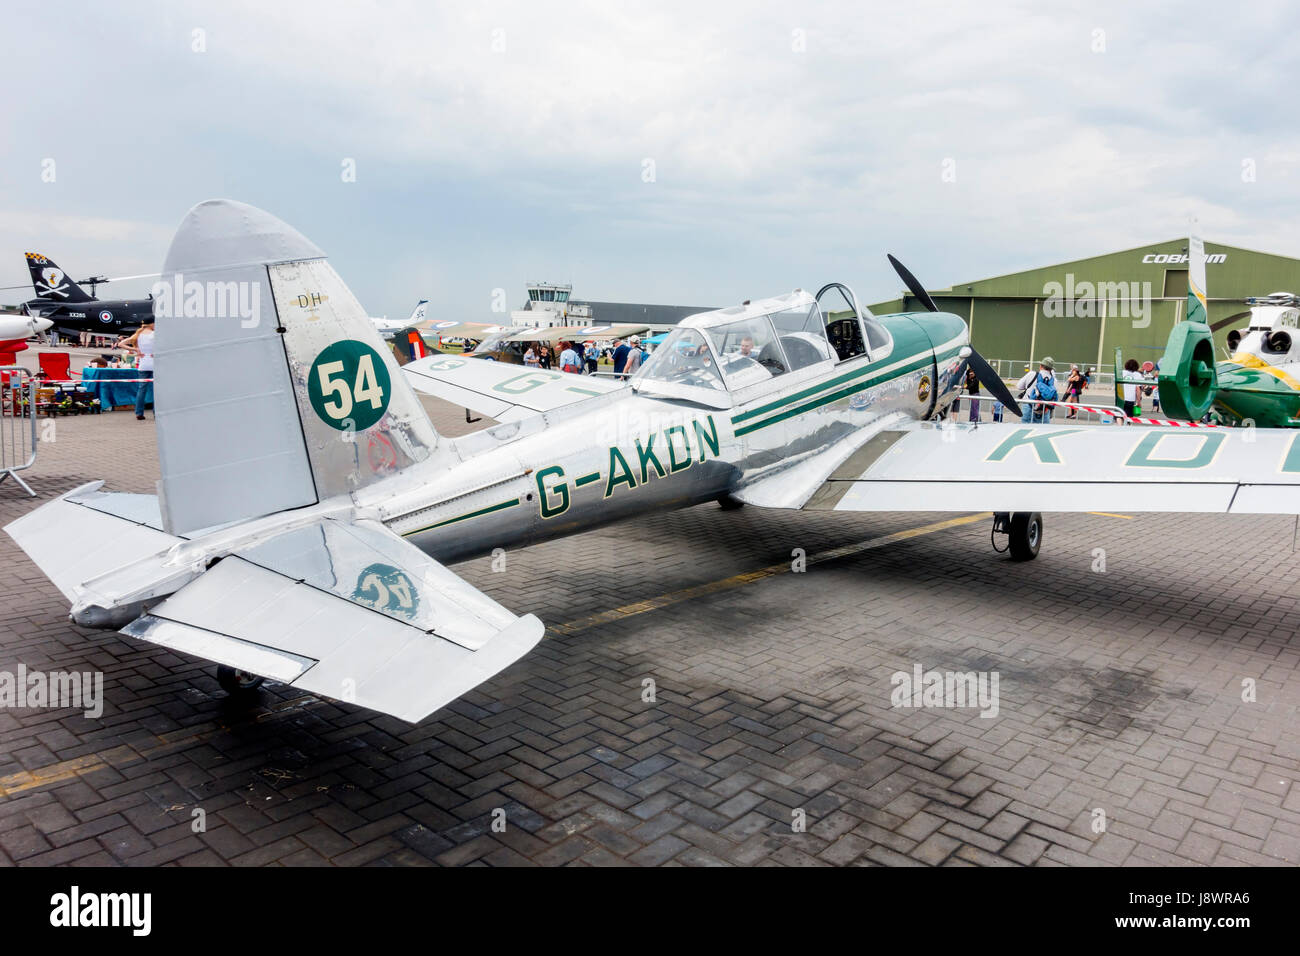 Formation de vol avion Chipmunk G-AKDN construit par De Haviland Canada en 1946 et exposé au Salon aéronautique Skylive à l'aéroport Durham Tees Vally 2017 Banque D'Images